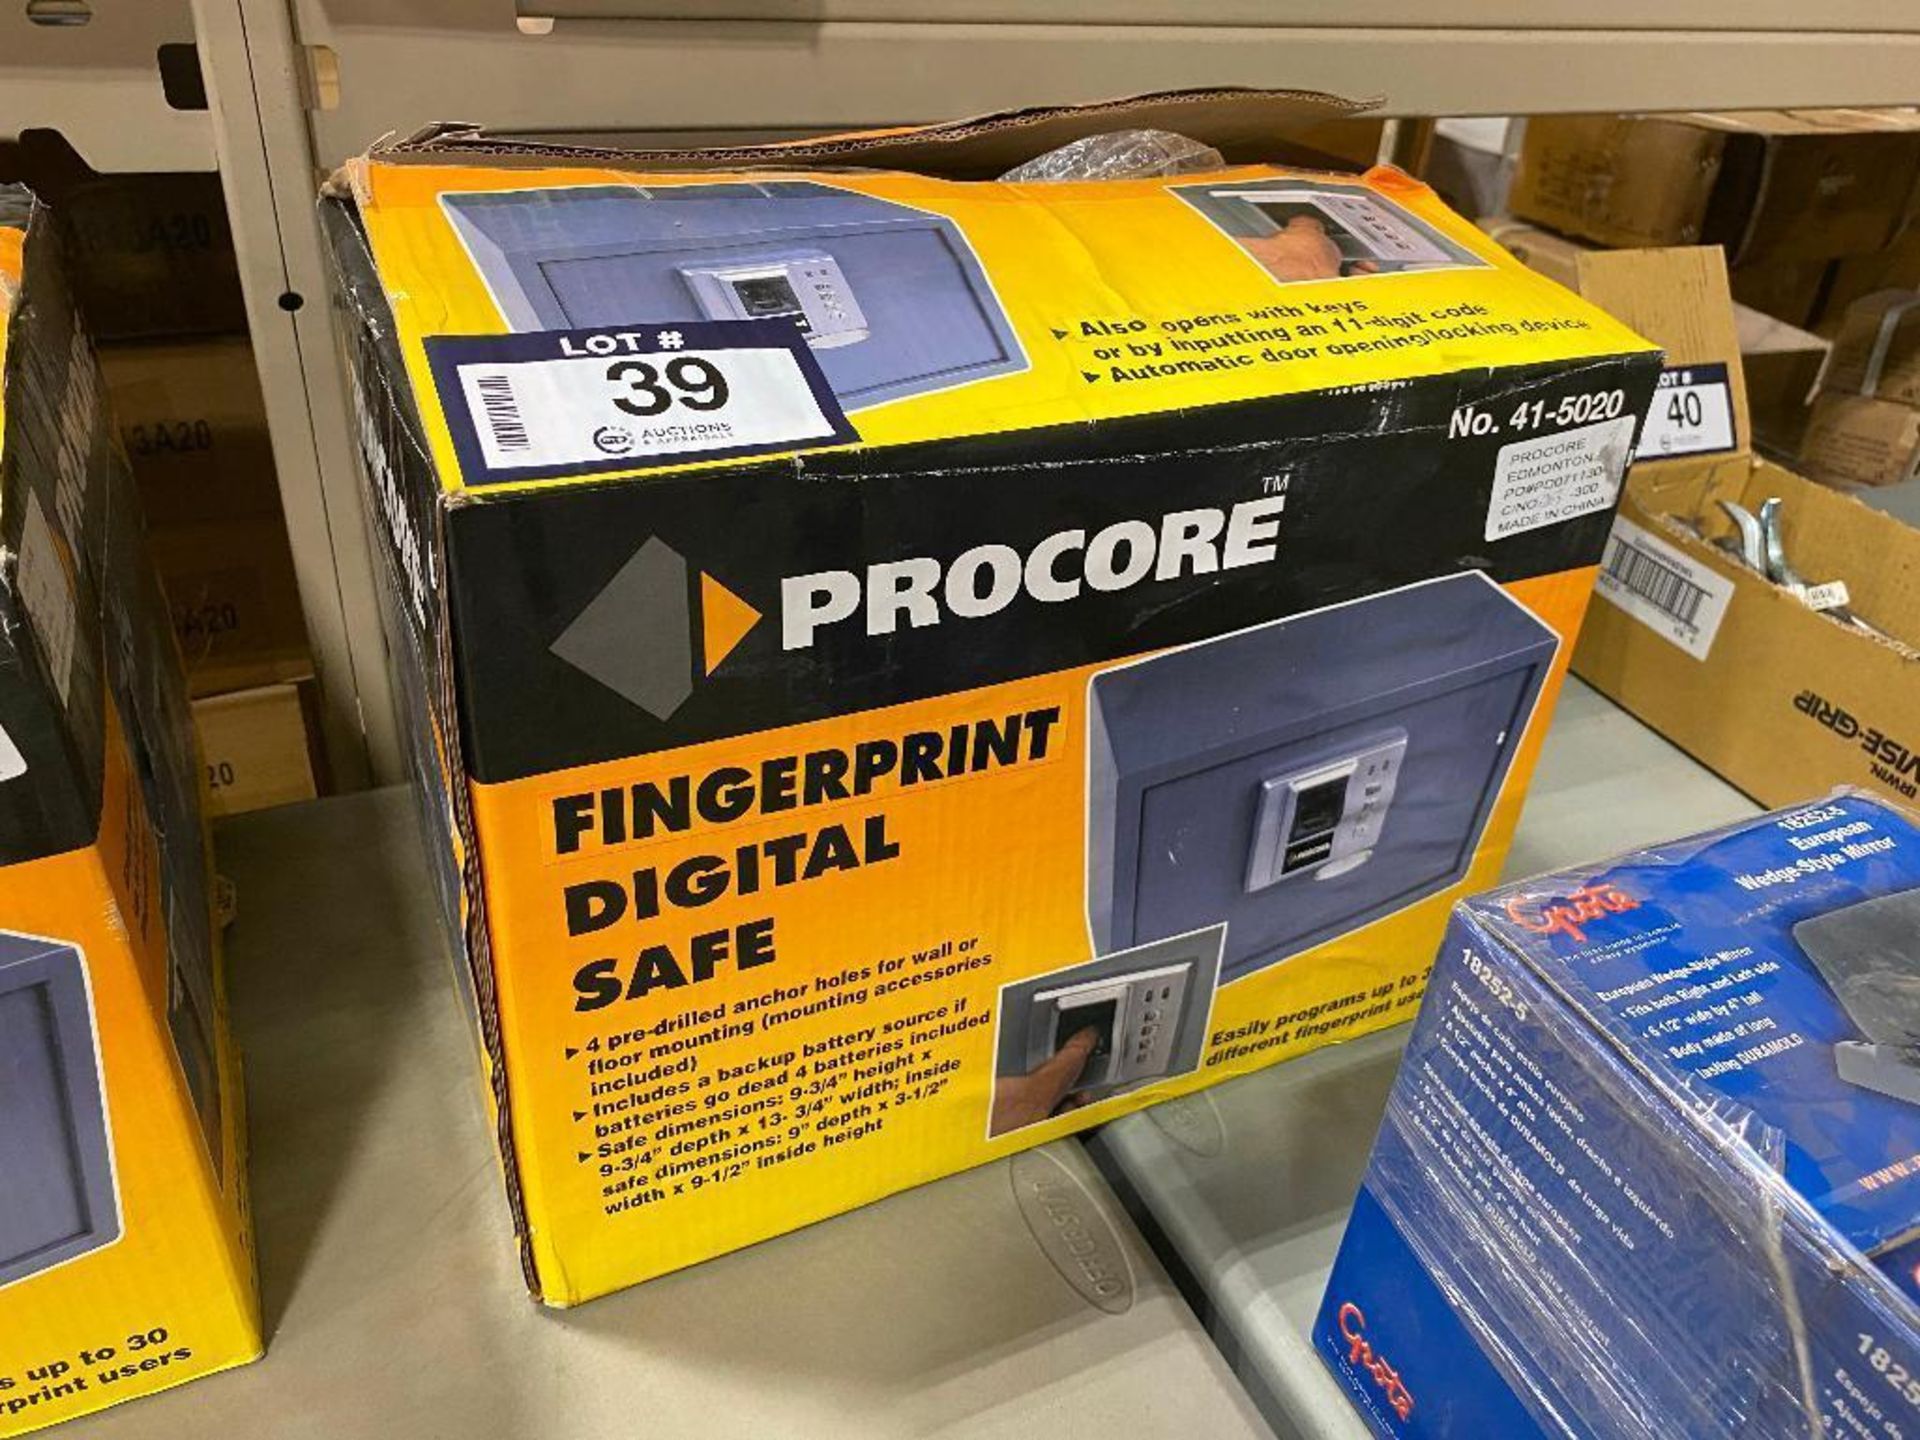 Procore Fingerprint Digital Safe